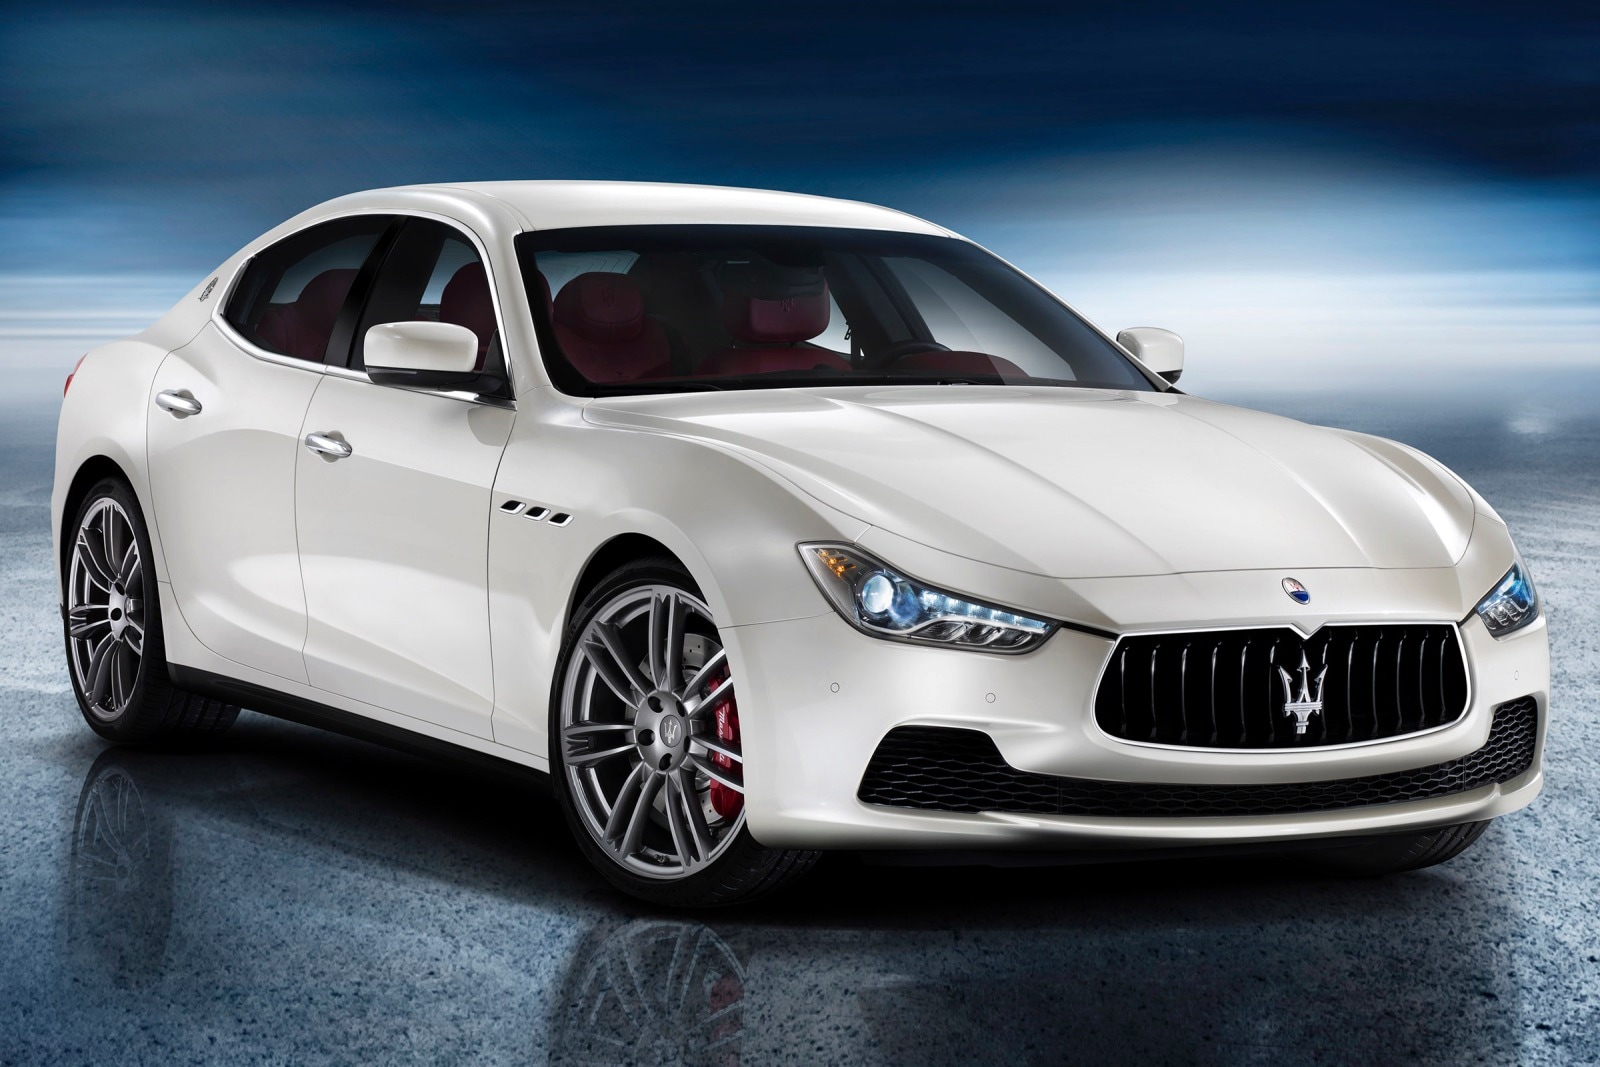 2015 Maserati Ghibli Review & Ratings | Edmunds